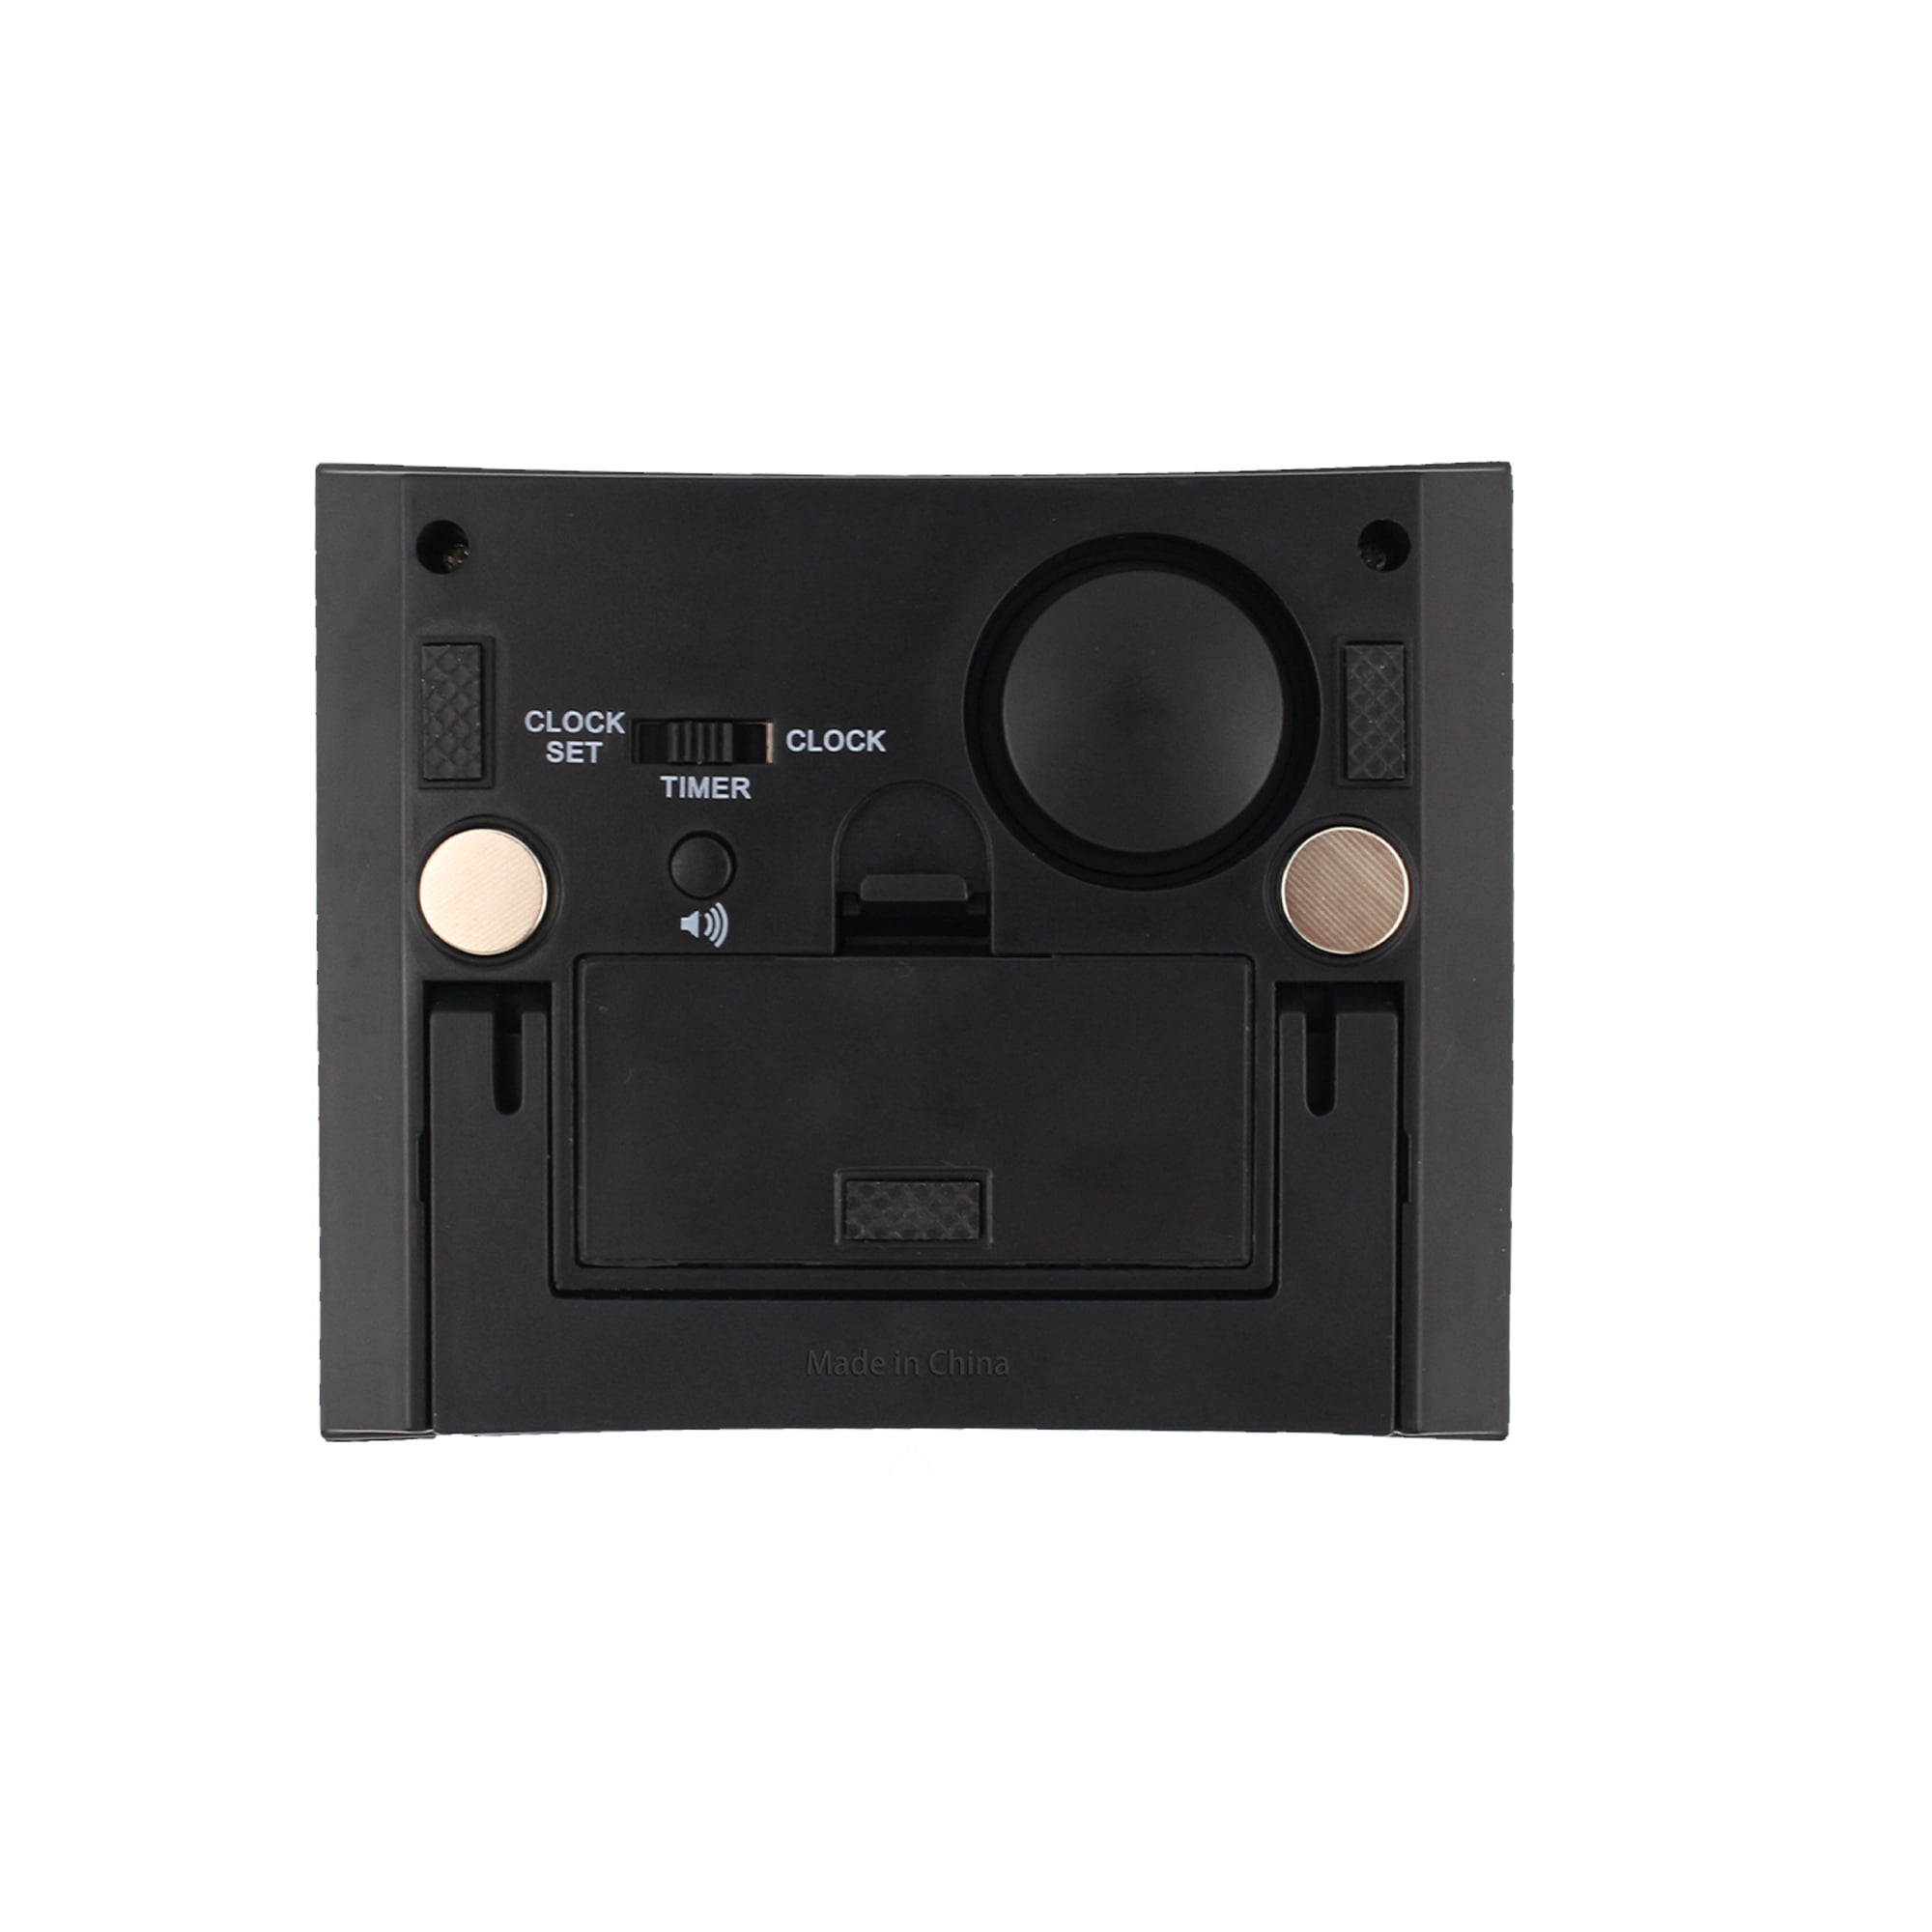 ThermoPro TM02 - Temporizador digital de cocina con doble cuenta regresiva,  cronómetro magnético, con alarma fuerte ajustable y retroiluminación LCD